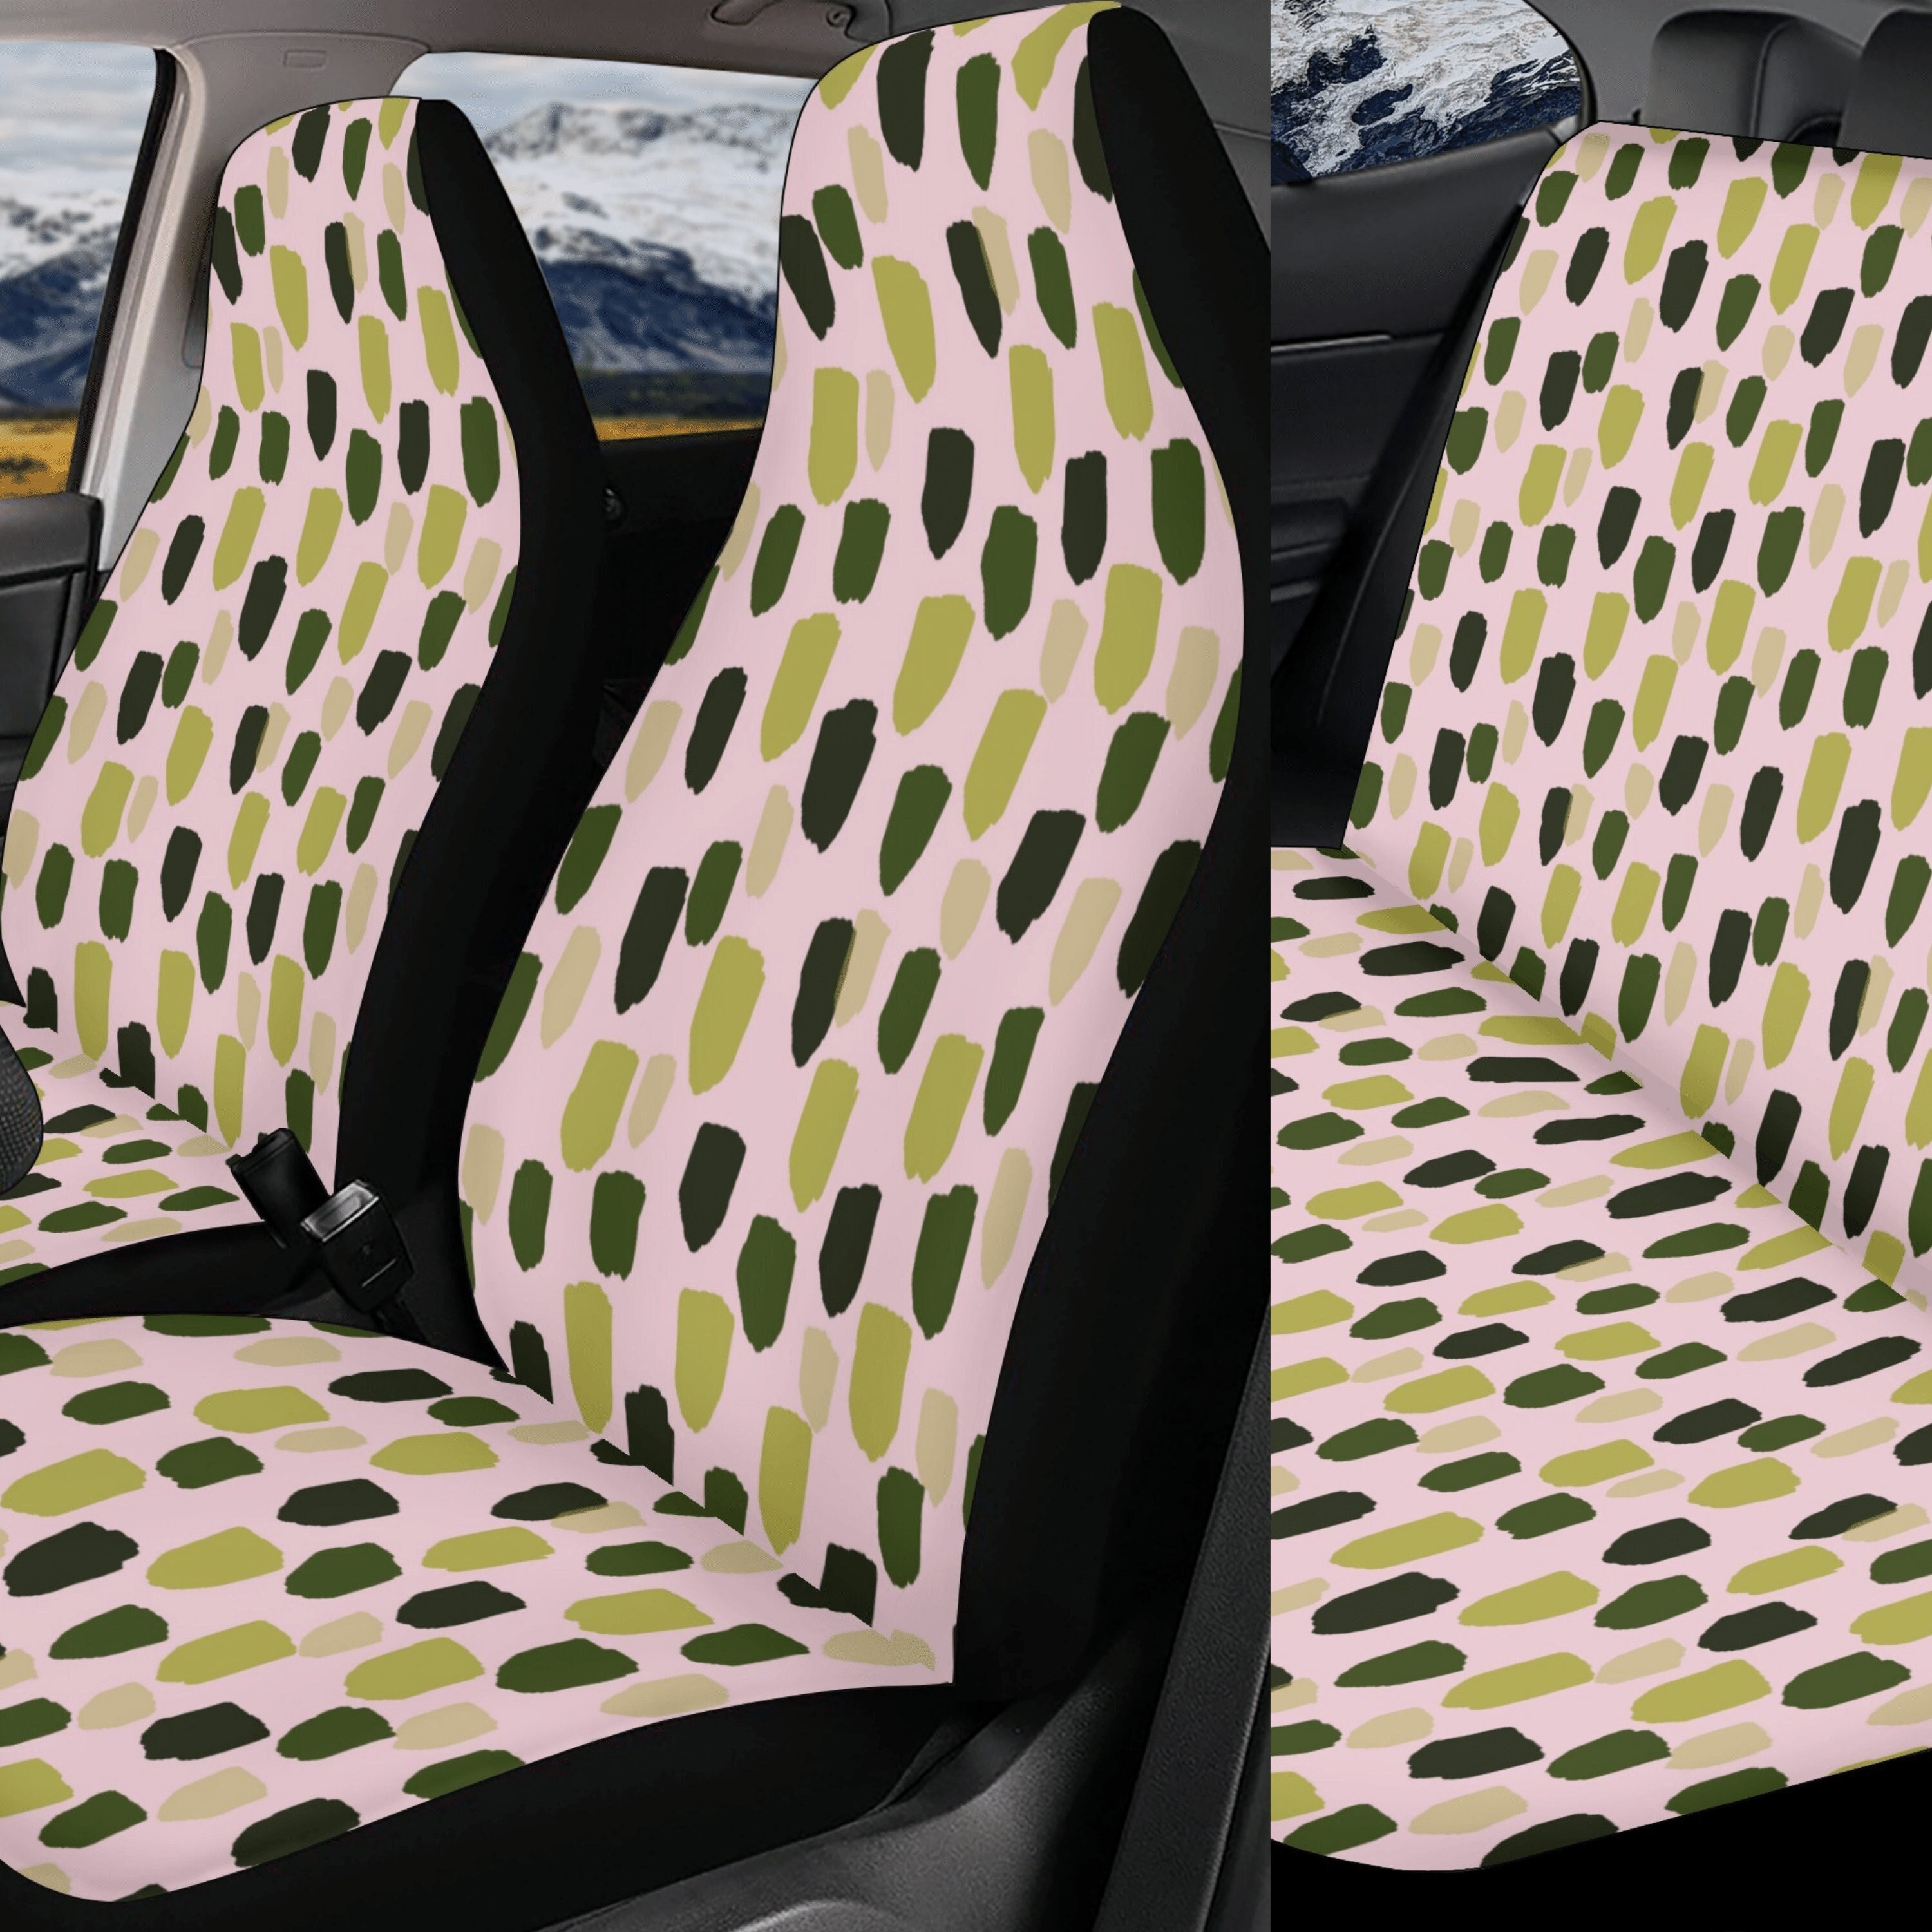 Schwarz Abstrakt gepunktete Sitzhülle für Auto Full Set, Auto Sitzbezug Set,  Sitzbezug Fahrzeug, Ästhetisches Auto Accessoire -  Österreich